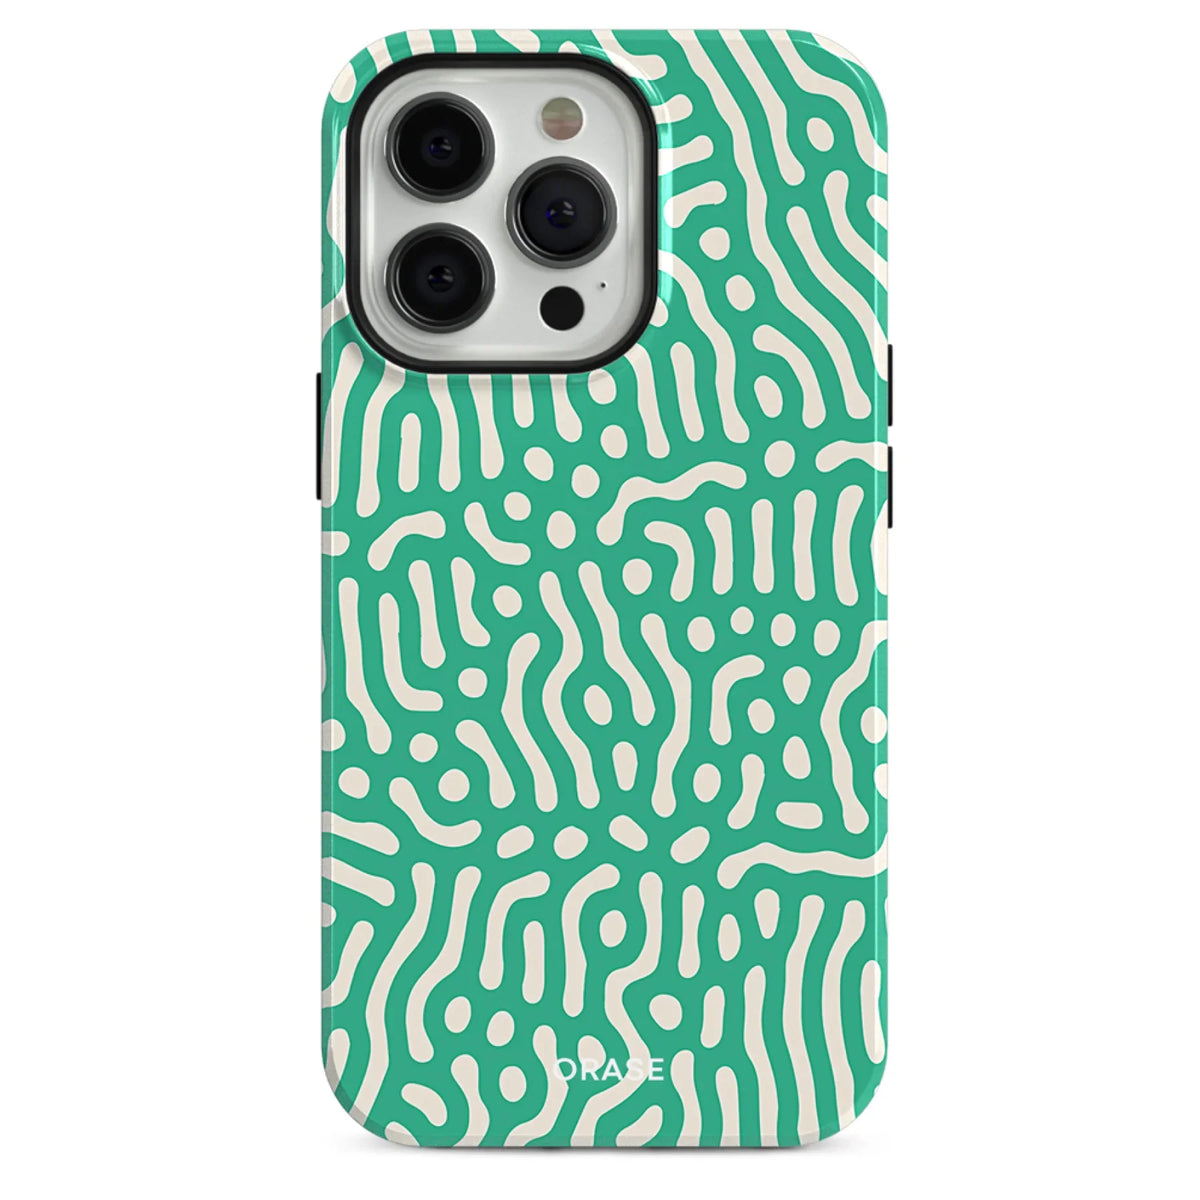 Lune Green iPhone Case - iPhone 12 Mini